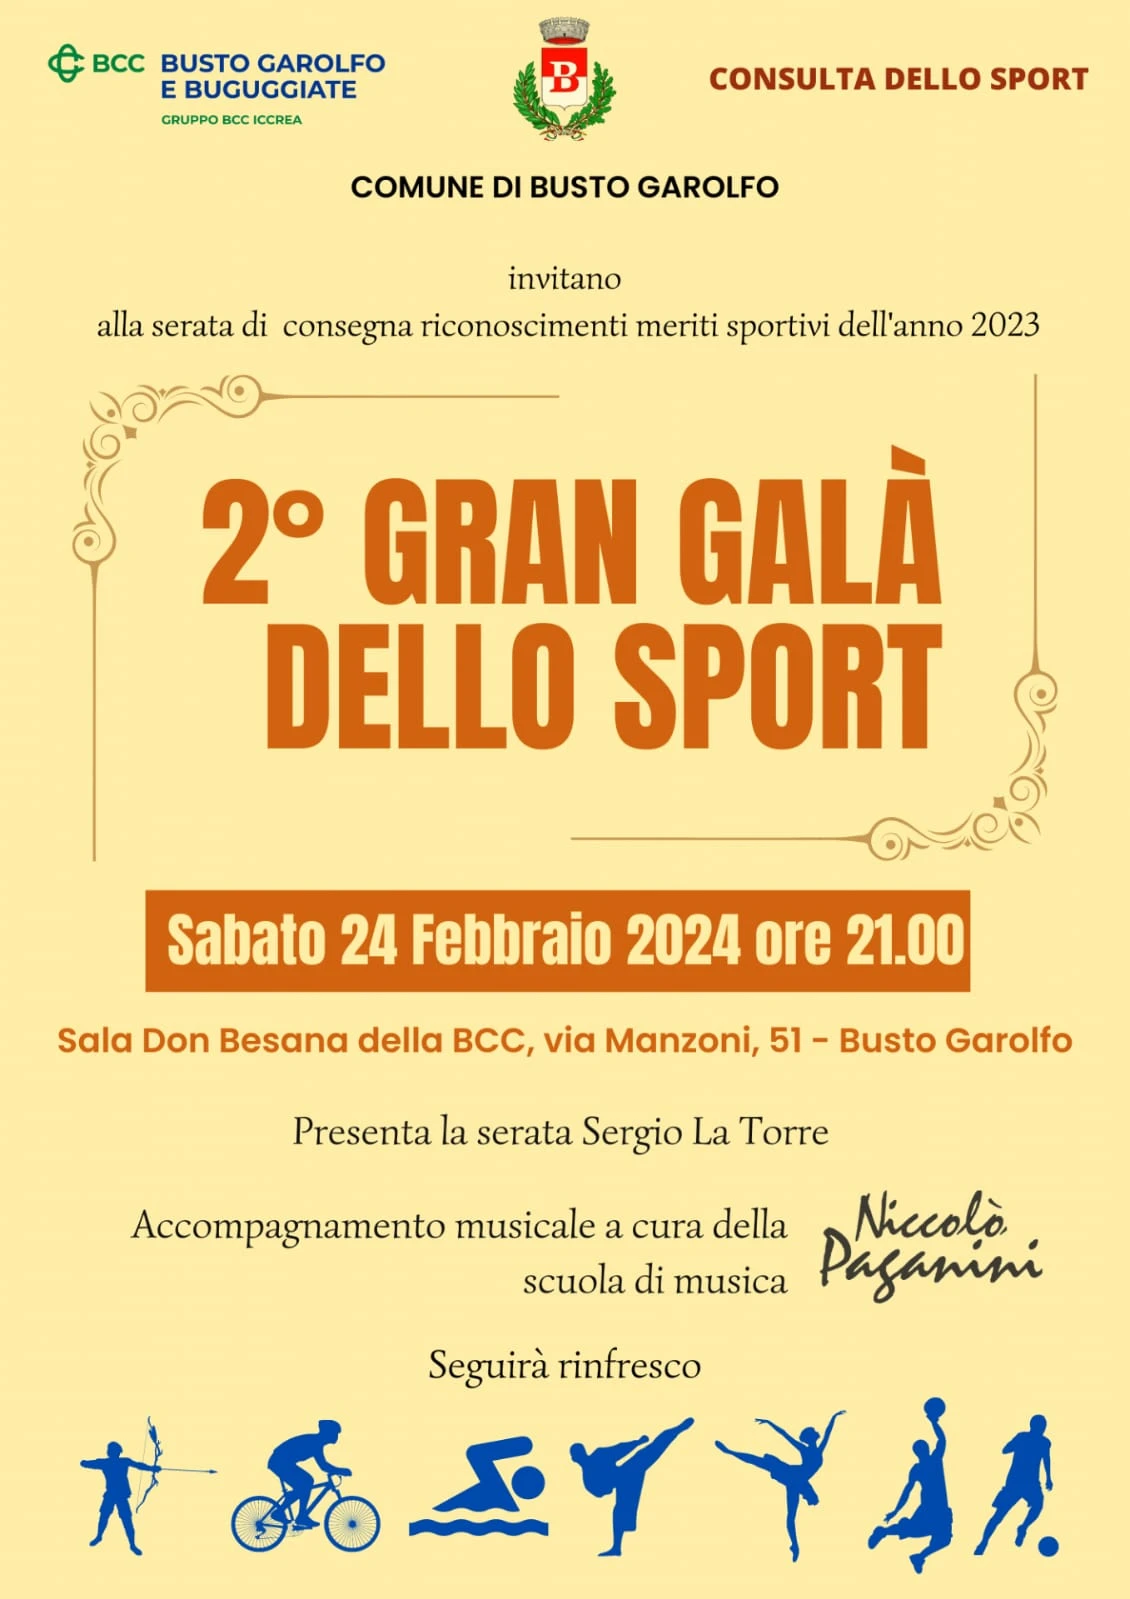 Busto Garolfo premia le eccellenze locali alla seconda edizione del Galà dello Sport